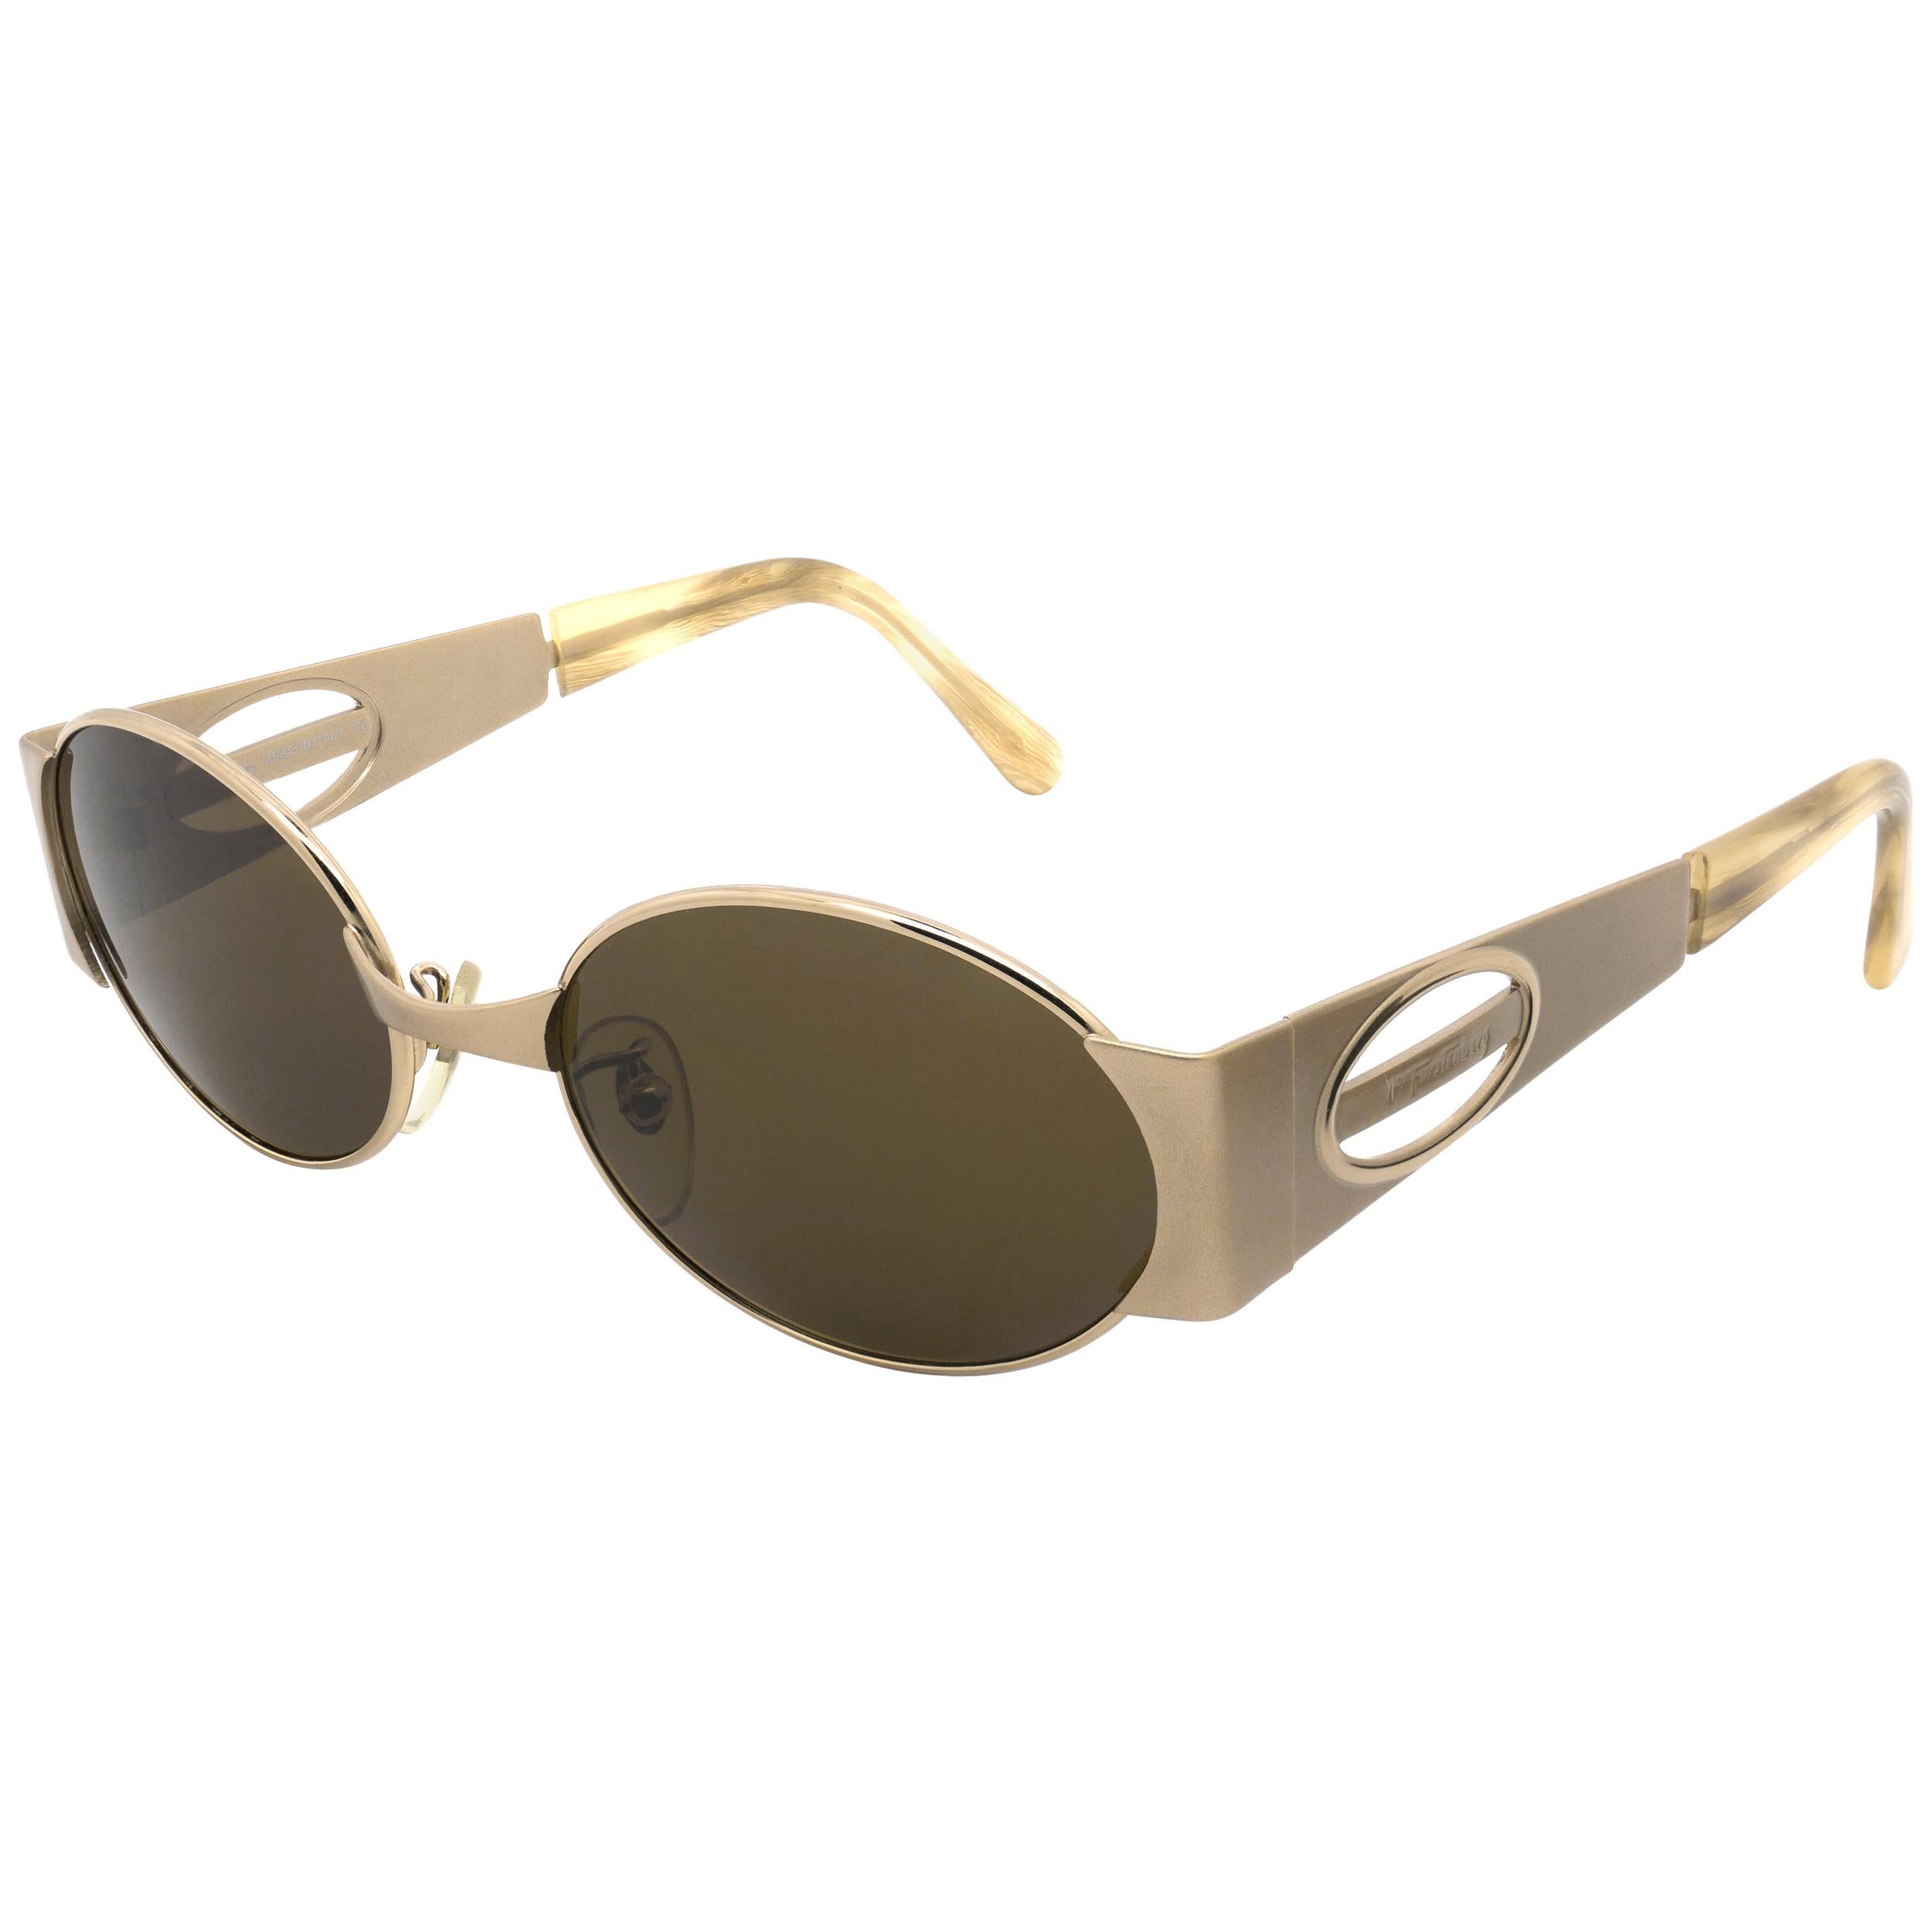 Prince Egon von Furstenberg vintage sunglasses For Sale